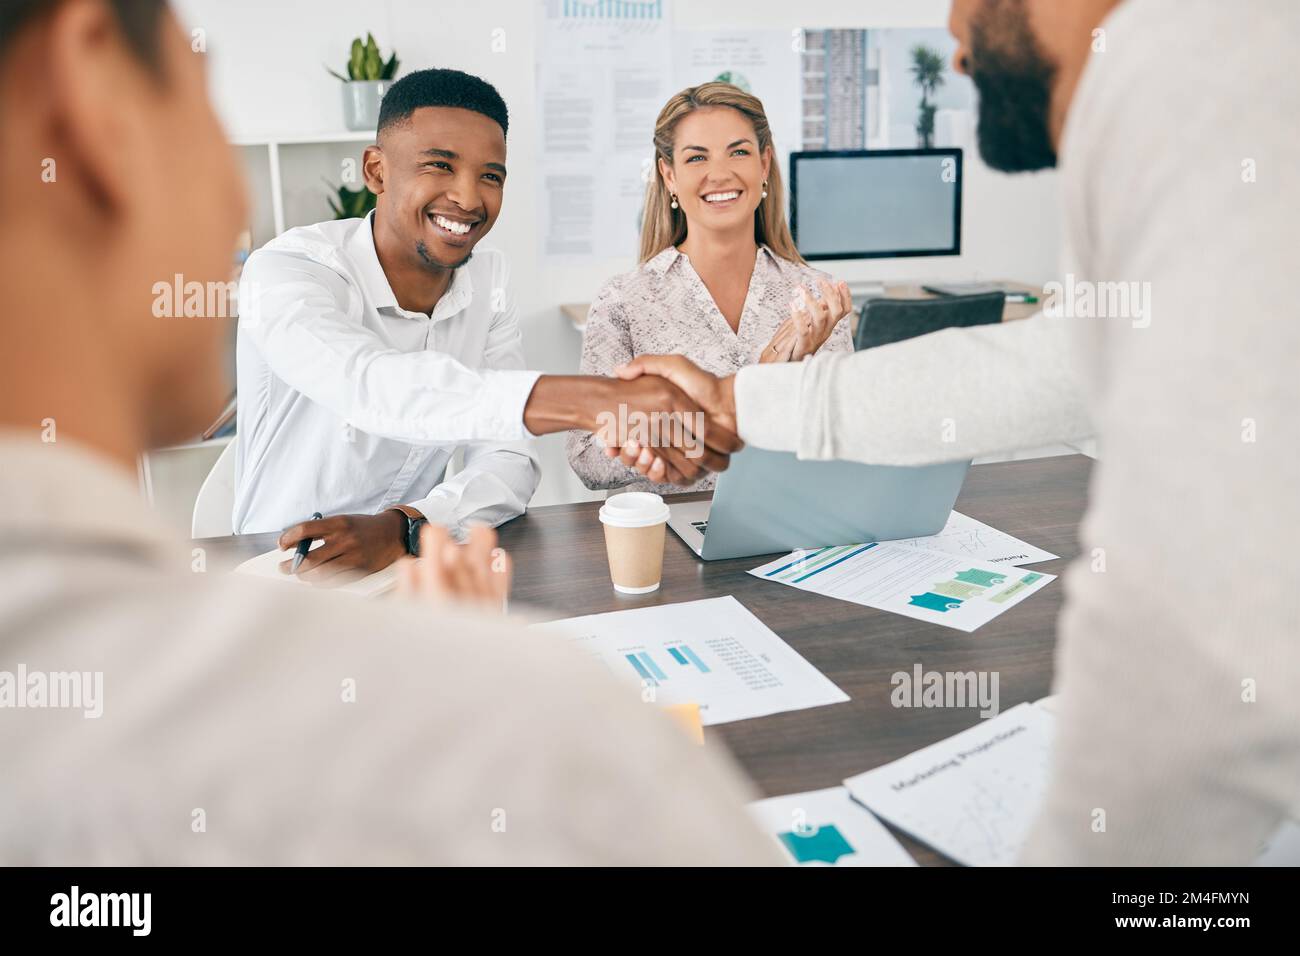 Händedruck, Finanzen und Buchhaltung mit einem Diversity-Paar, das während eines Meetings mit einem Finanzberater spricht. Vielen Dank, Geld und Investitionen mit einem Stockfoto